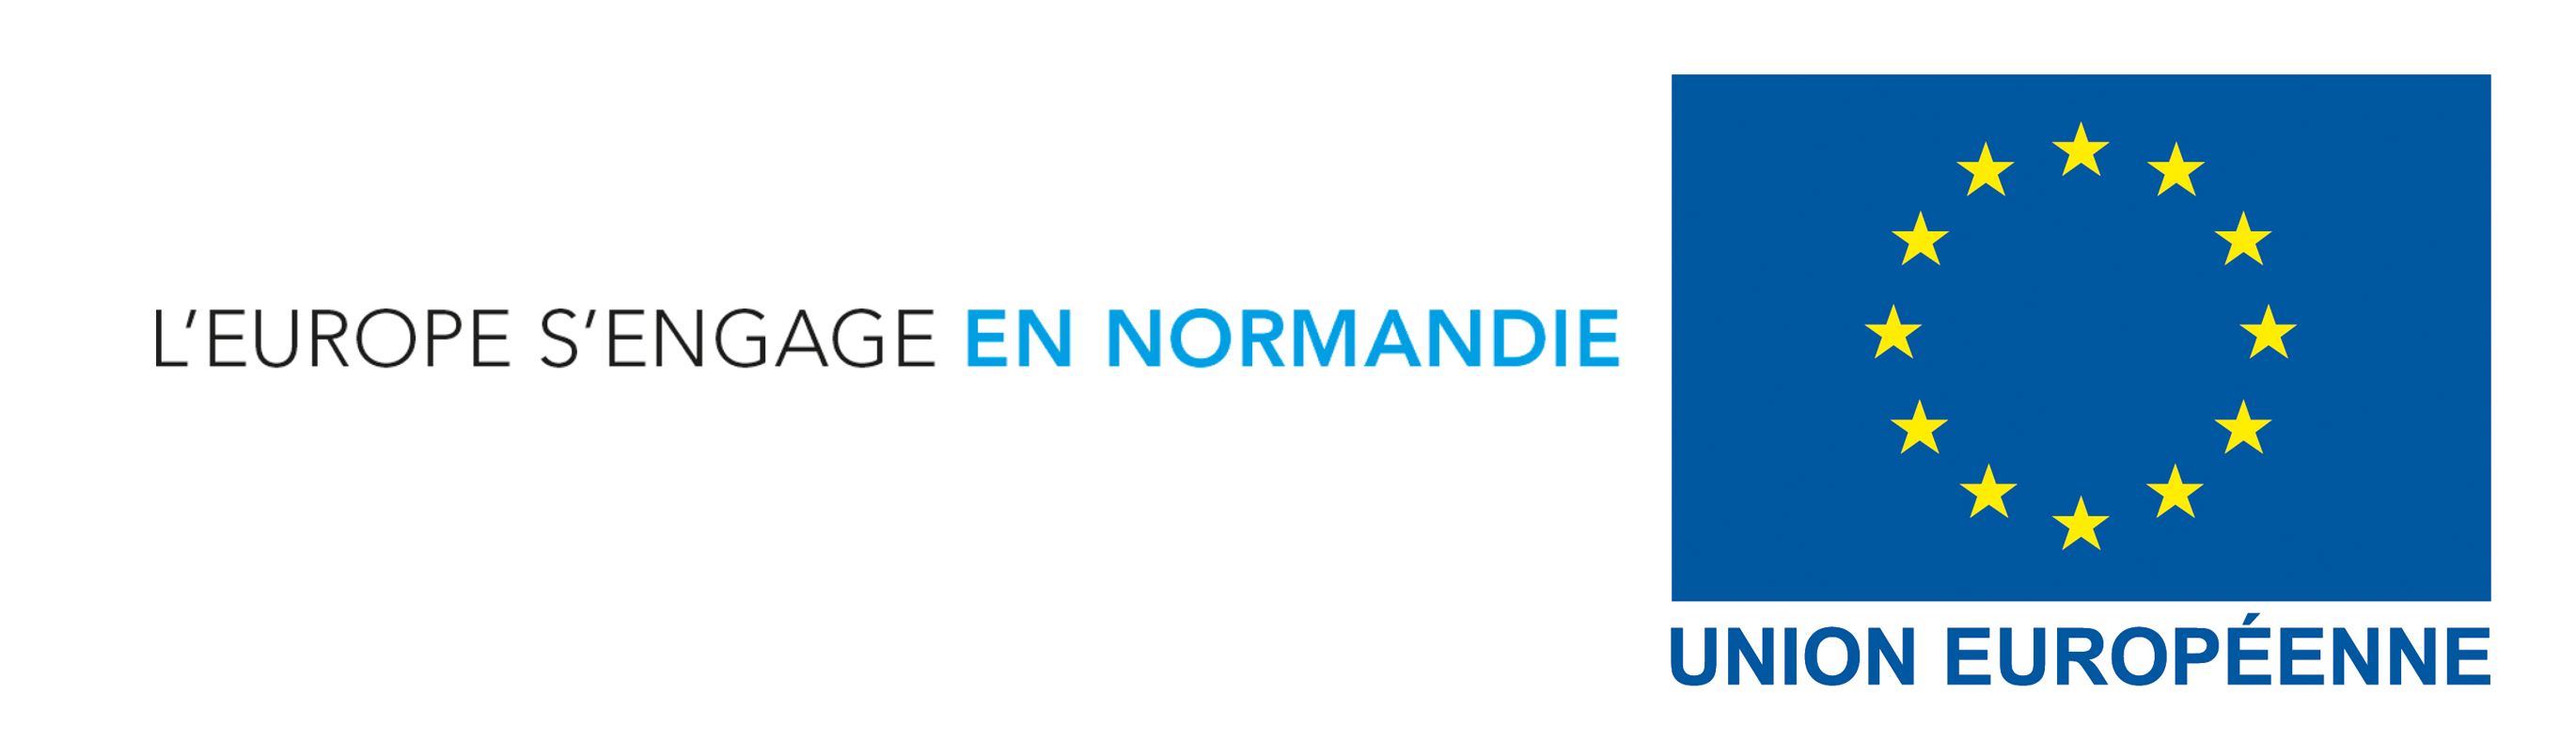 Portail des Aides Régionales Normandie - Site de Caen